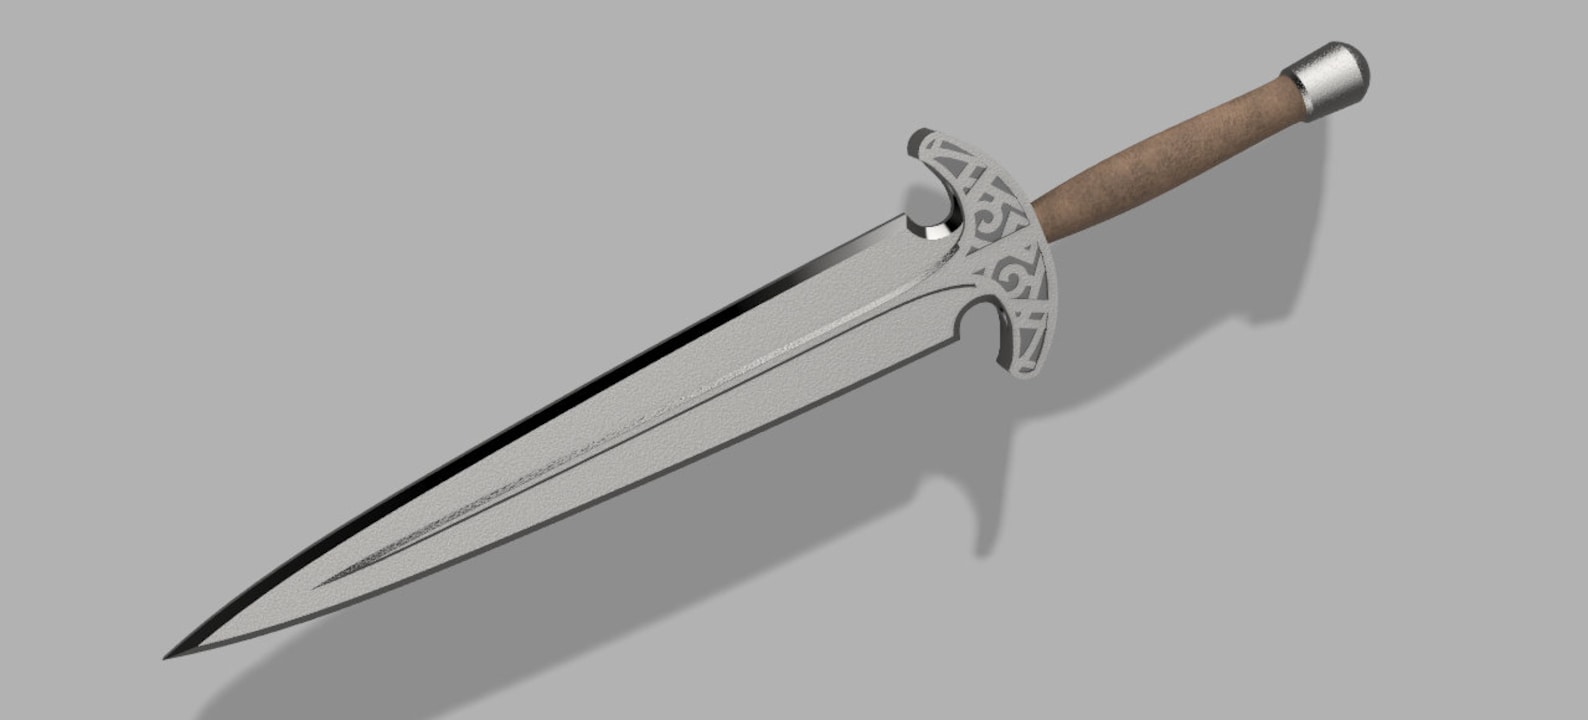 Skyrim inspired Steel Dagger Replica Cosplay Prop.